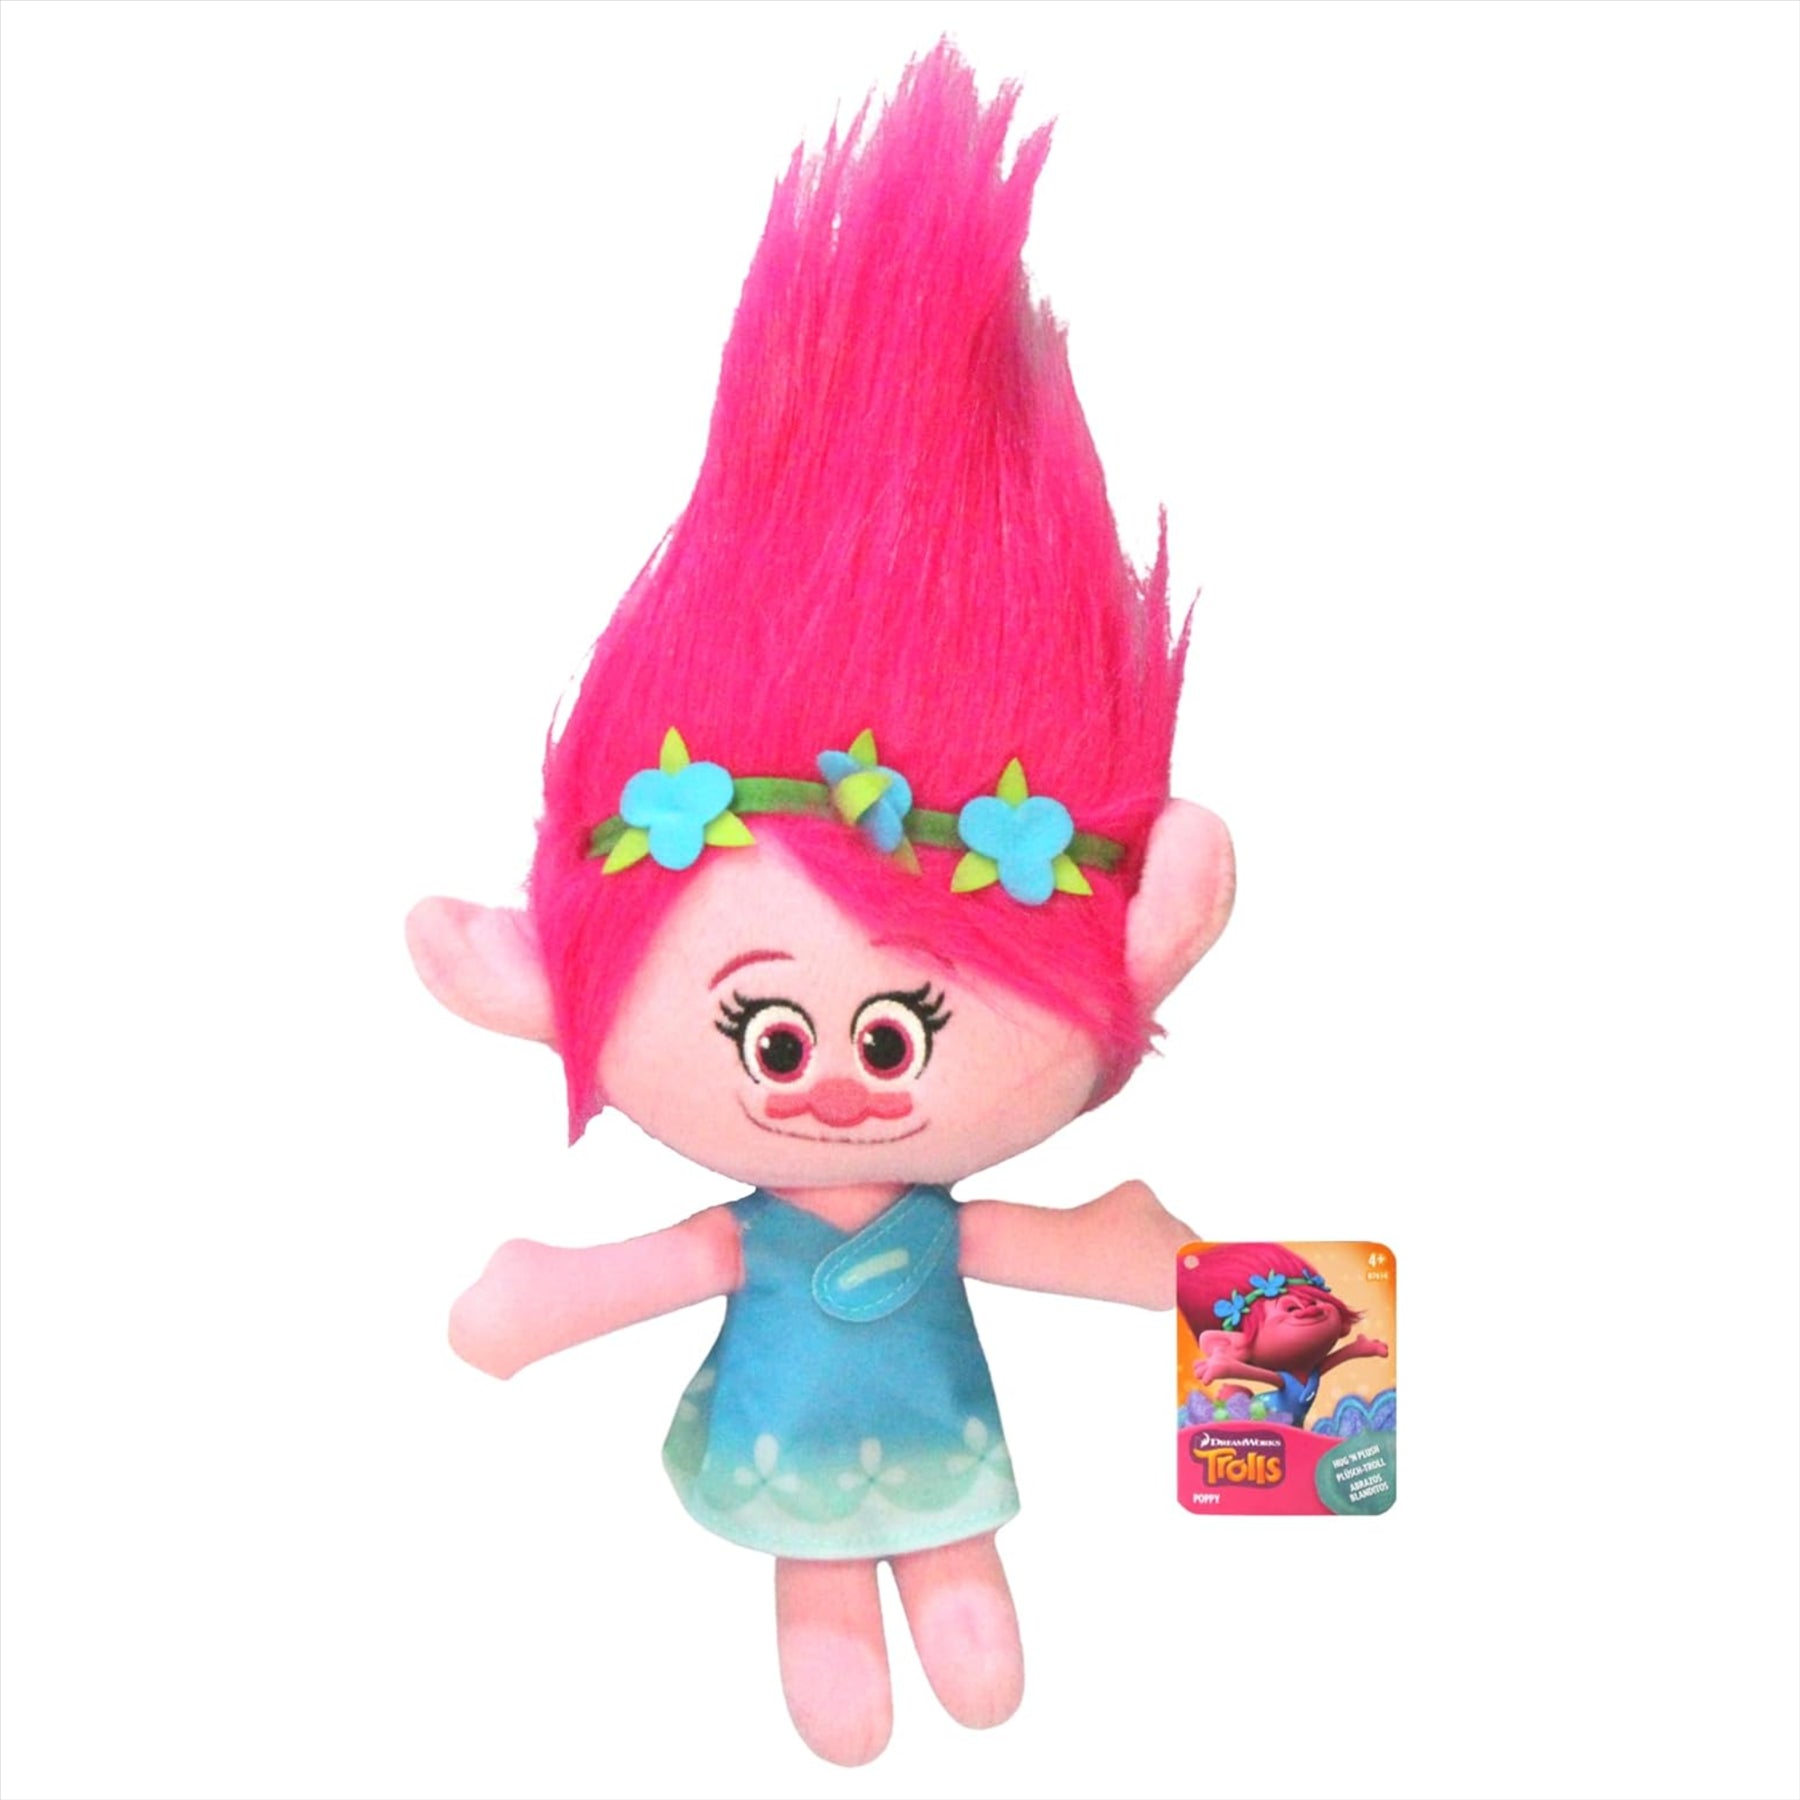 Trolls Soft Plush Toy 11" 28cm Twin Pack - Poppy & Biggie - Toptoys2u